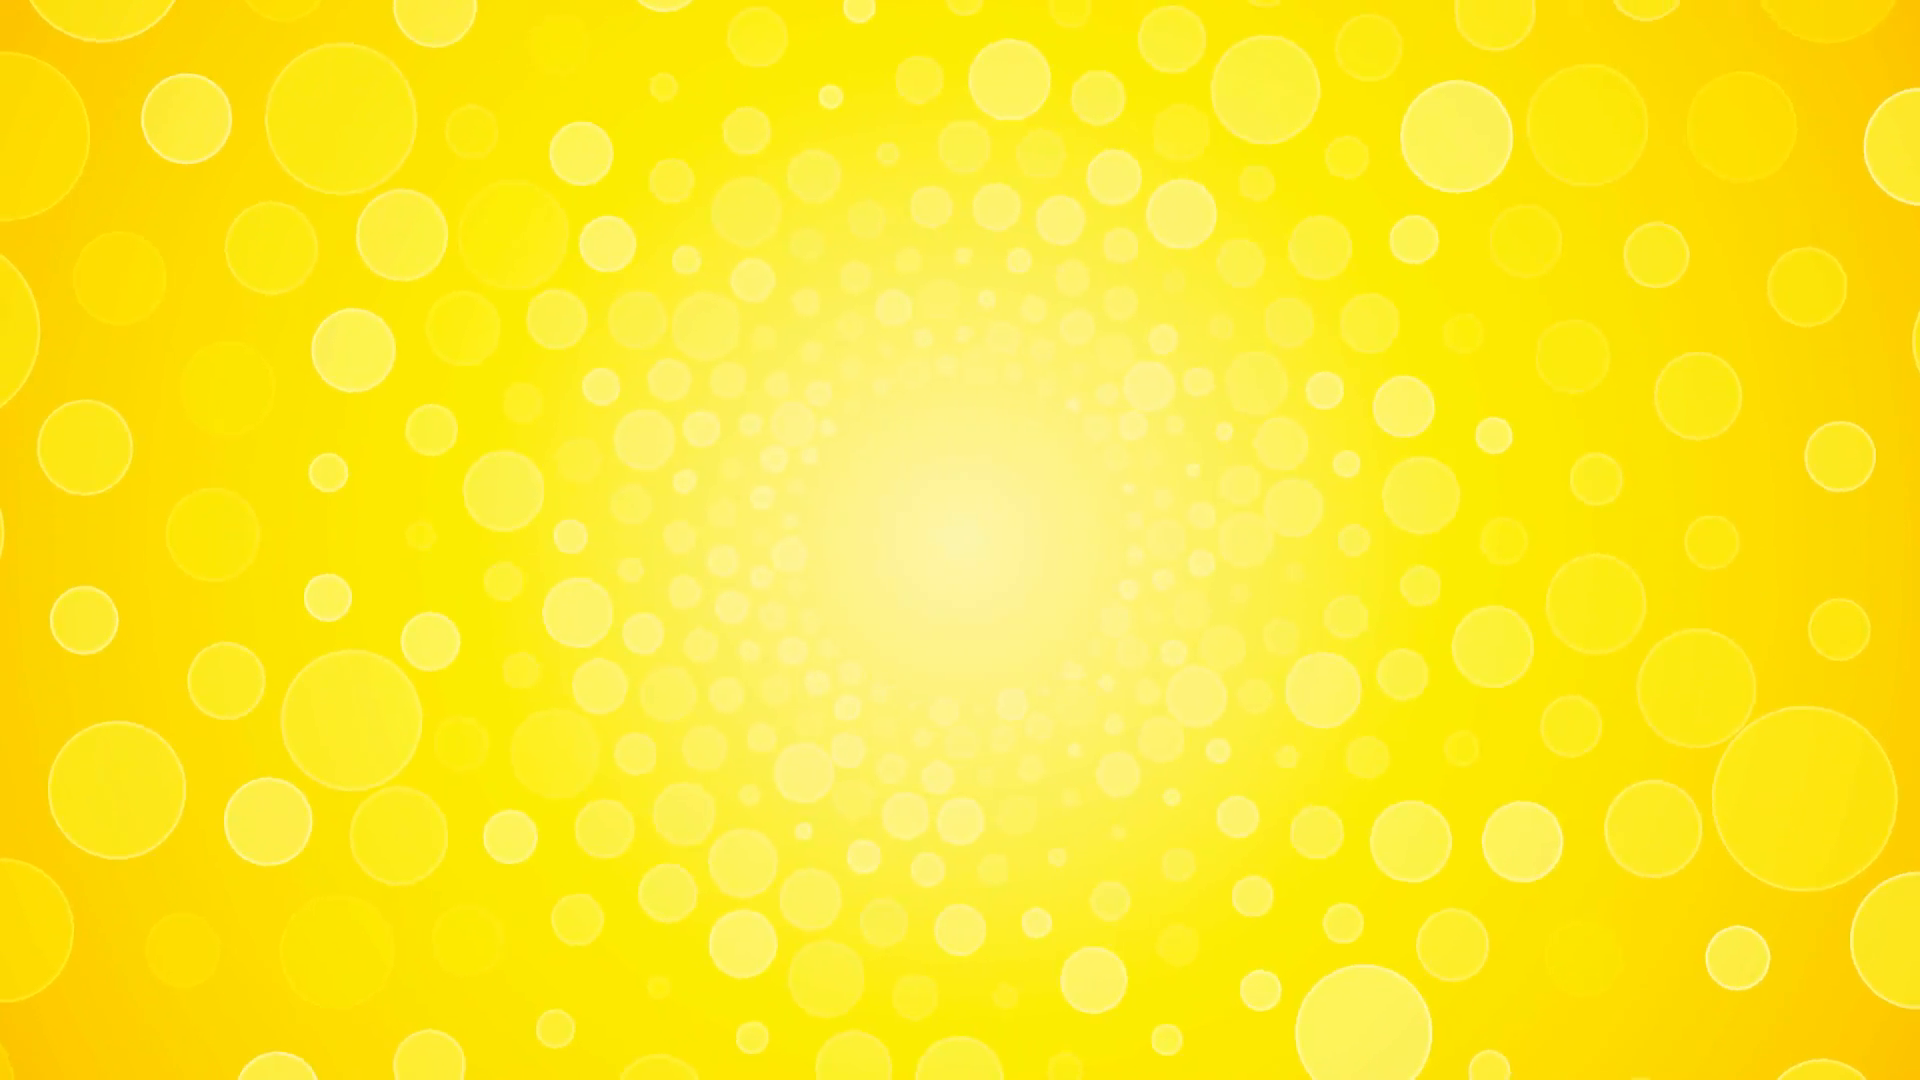 Nền vòng tròn màu vàng sáng quay trở thành điểm nhấn trên màn hình của bạn. Hãy xem ngay để cảm nhận sự phấn khích và tràn đầy năng lượng từ hình ảnh quay vòng với sắc vàng tươi sáng.